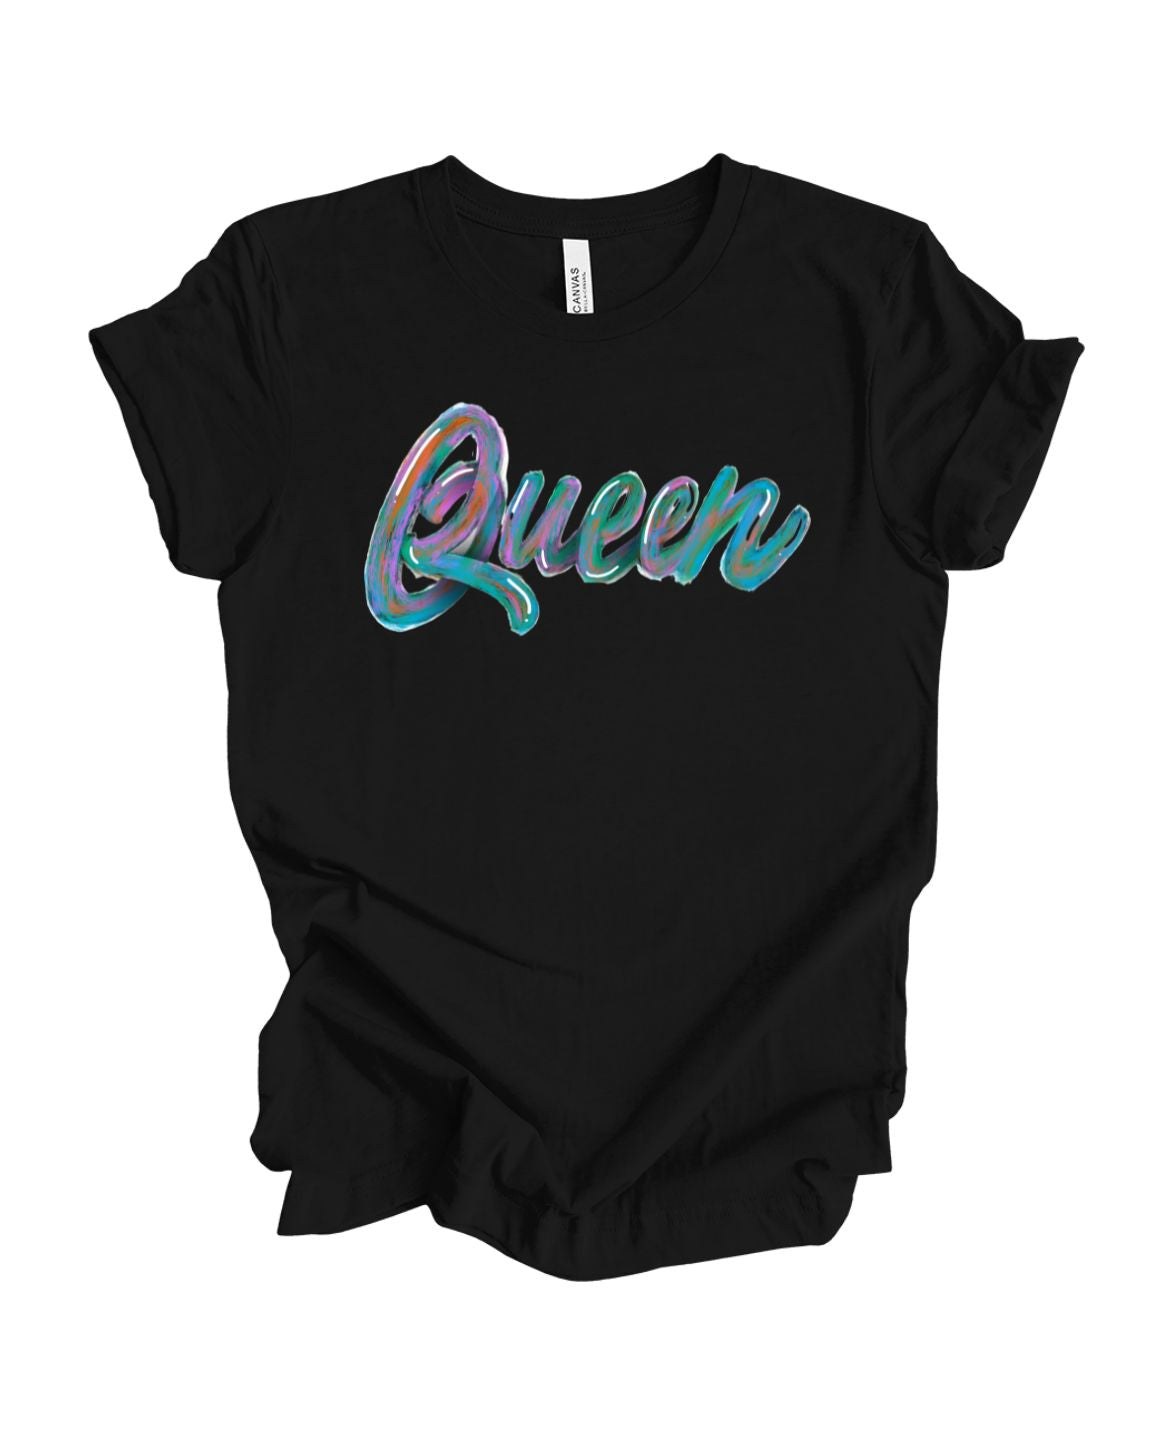 Queen T-Shirt